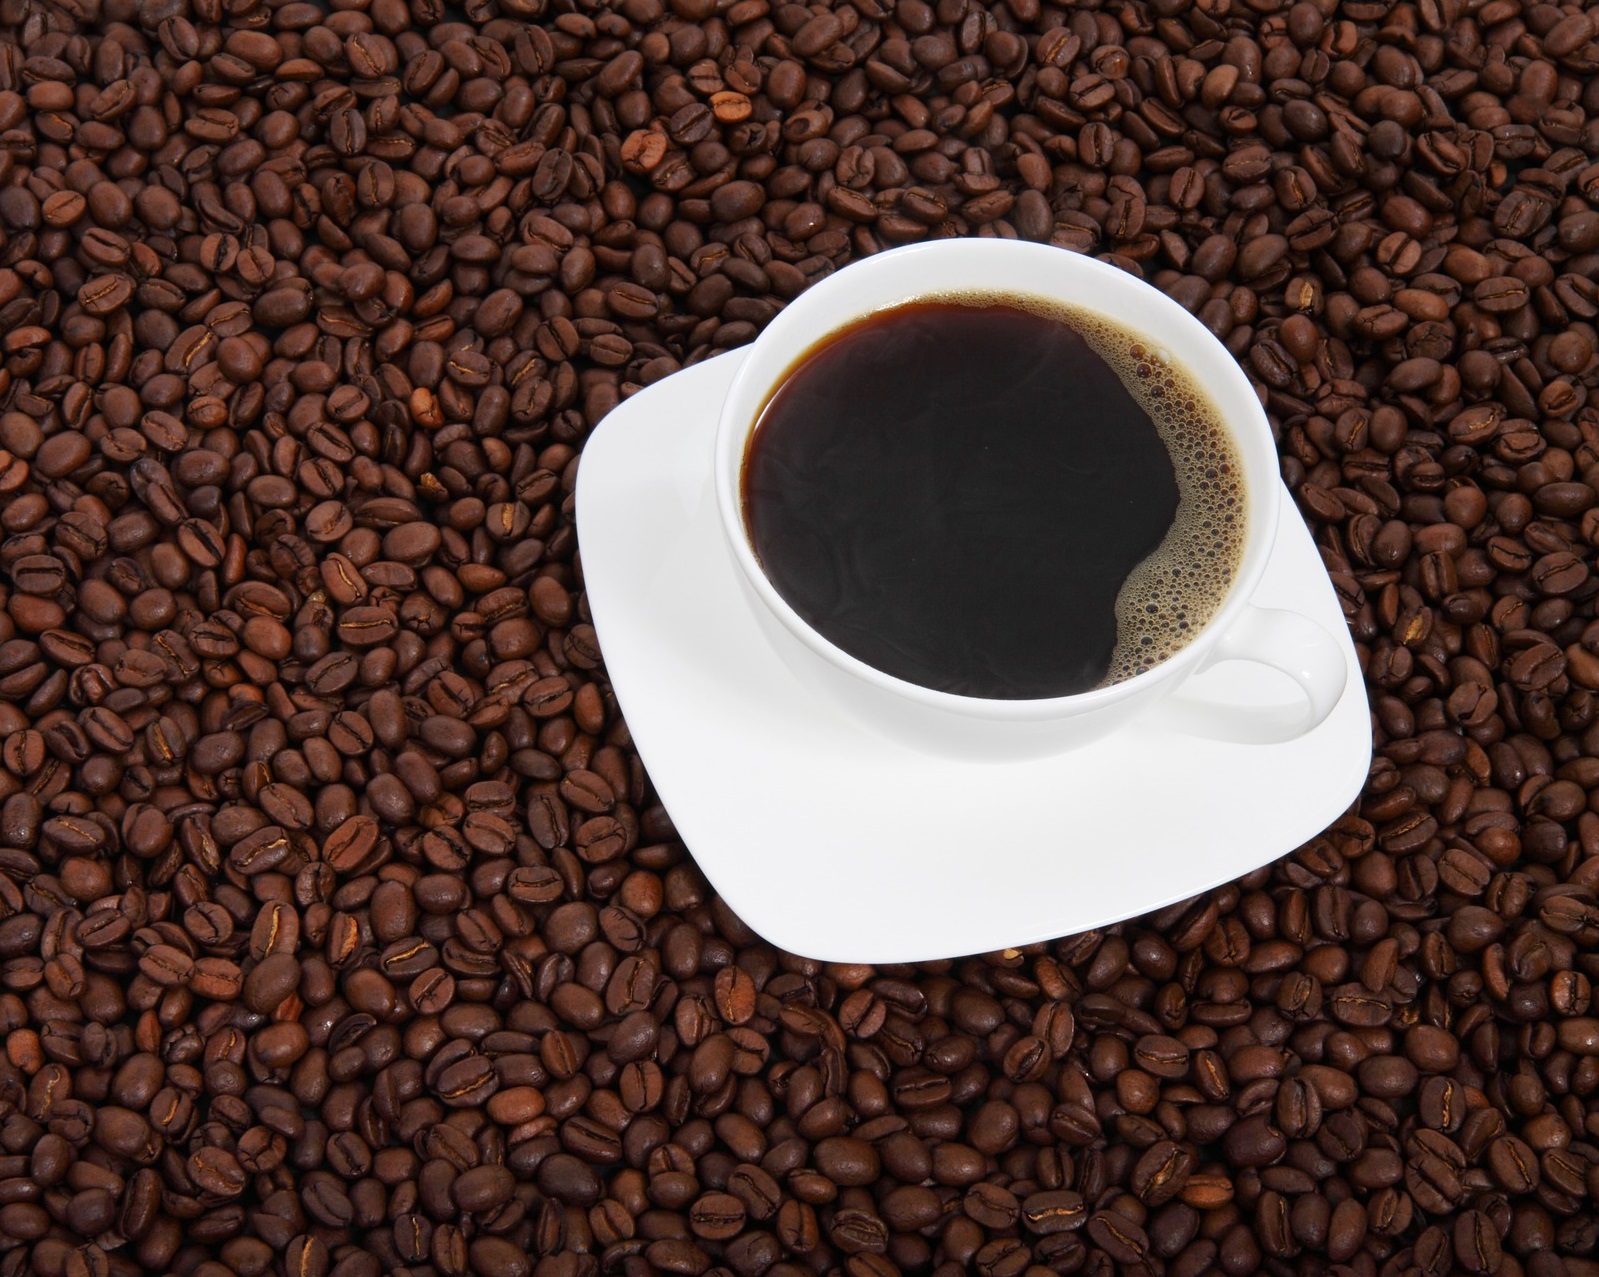 Caffeinated coffee